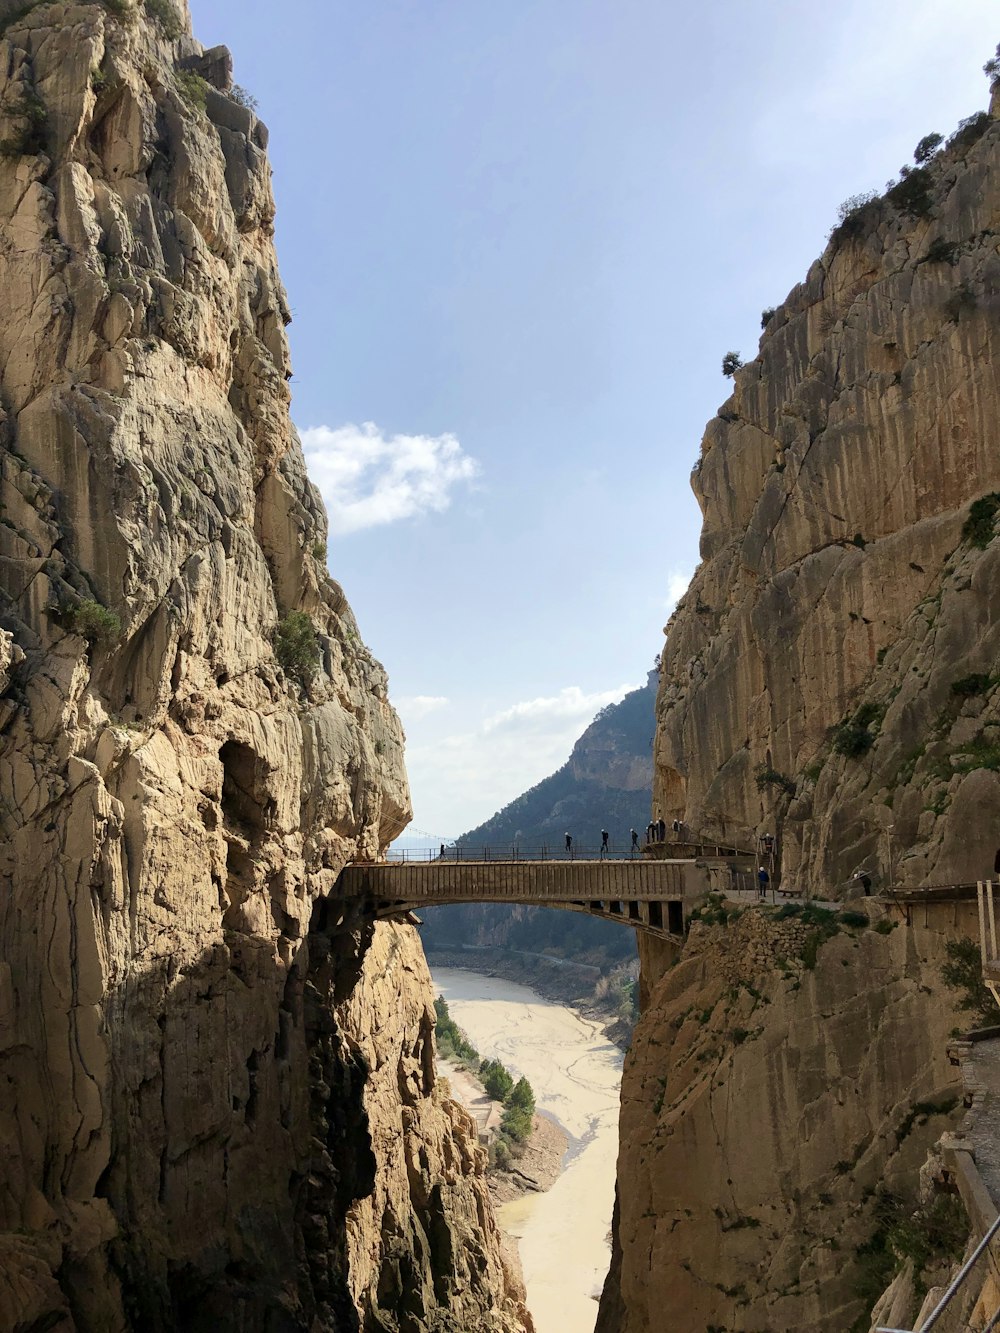 De Caminito del ray, een brug tussen bergen in Malaga